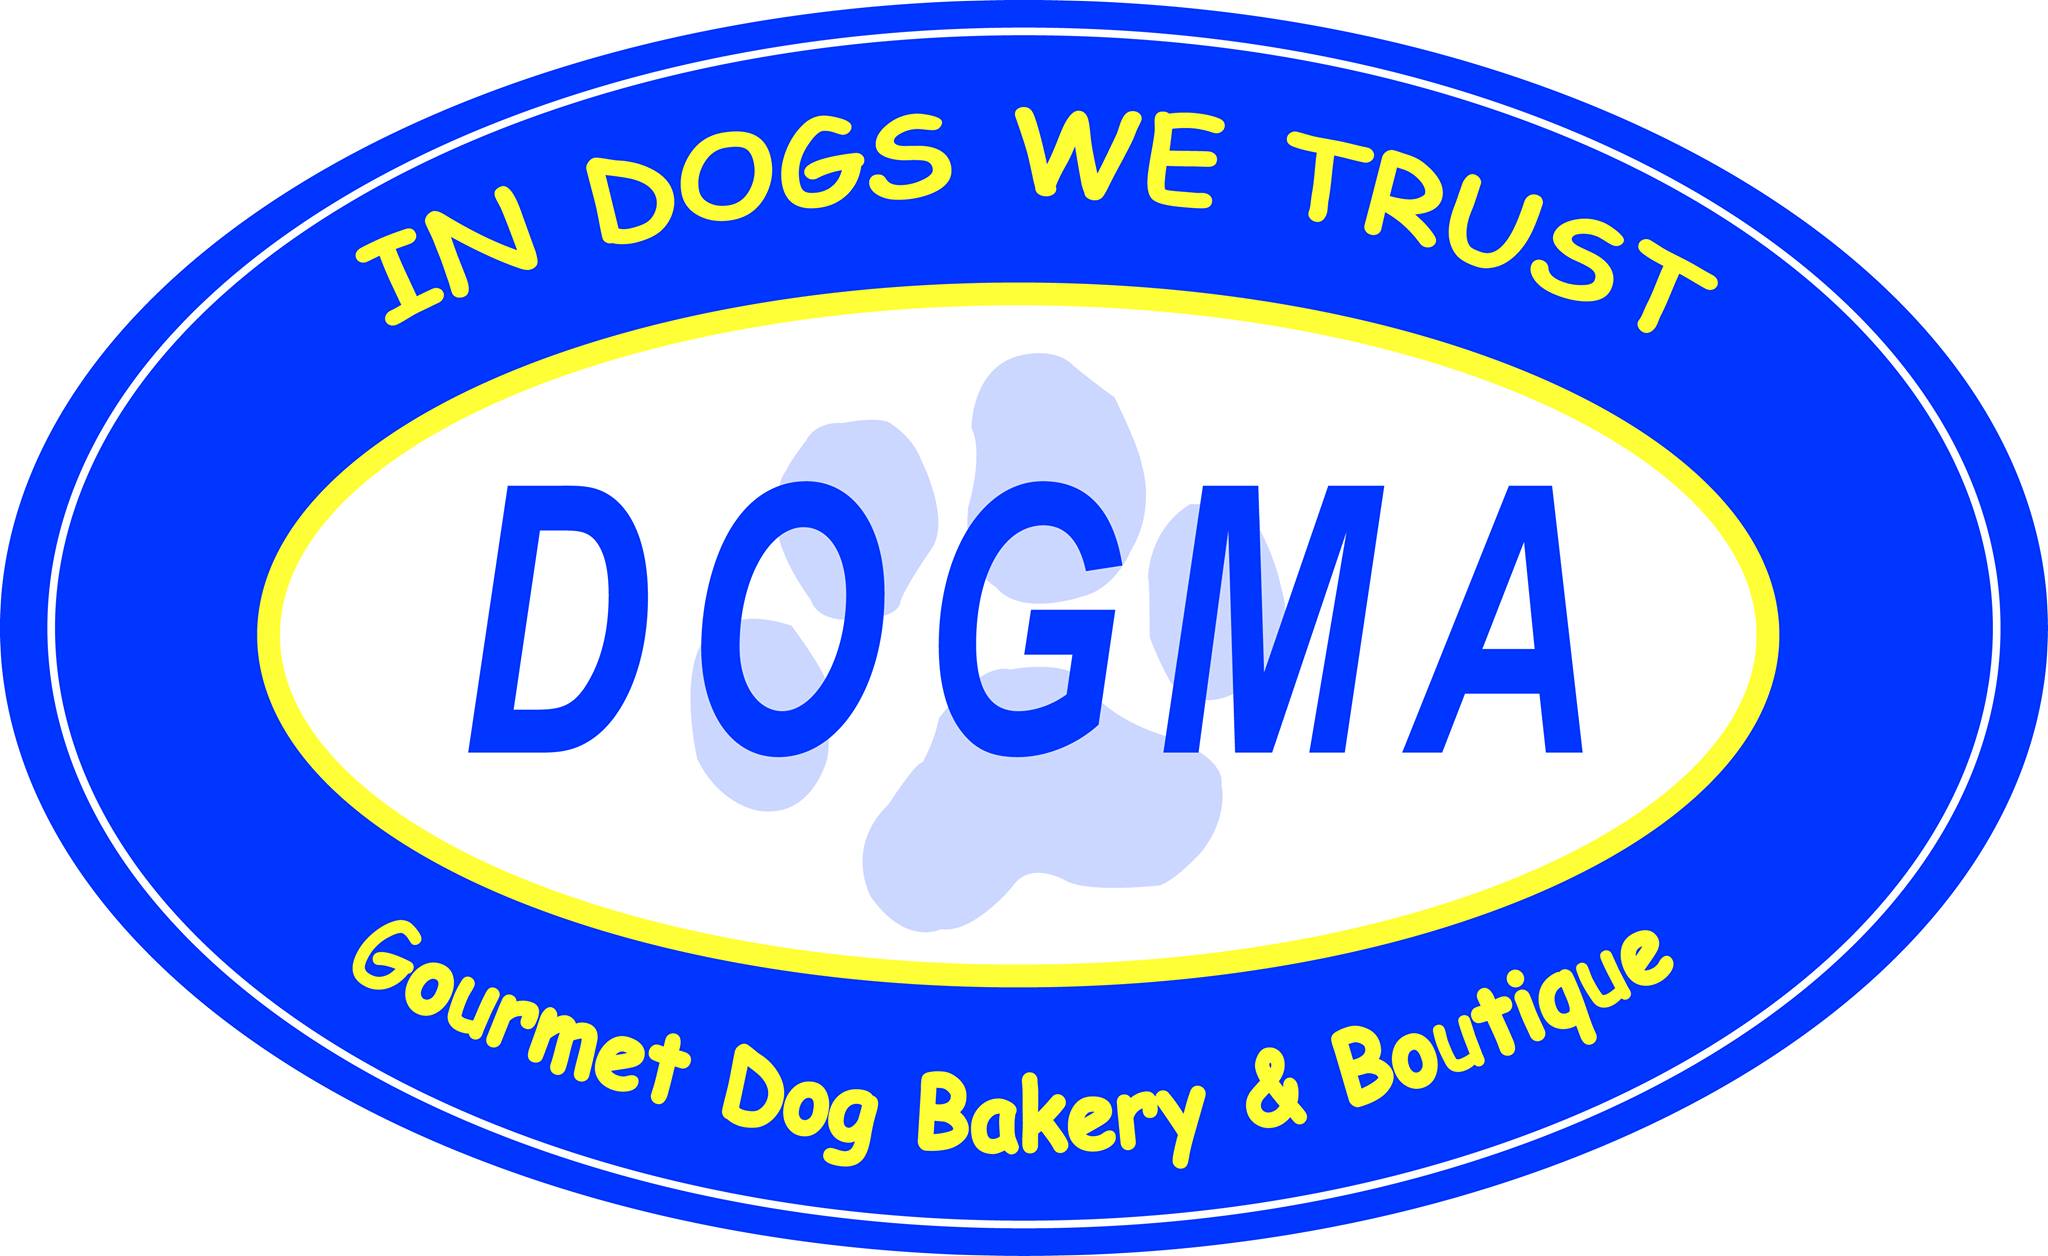 Company logo of Dogma Bakery